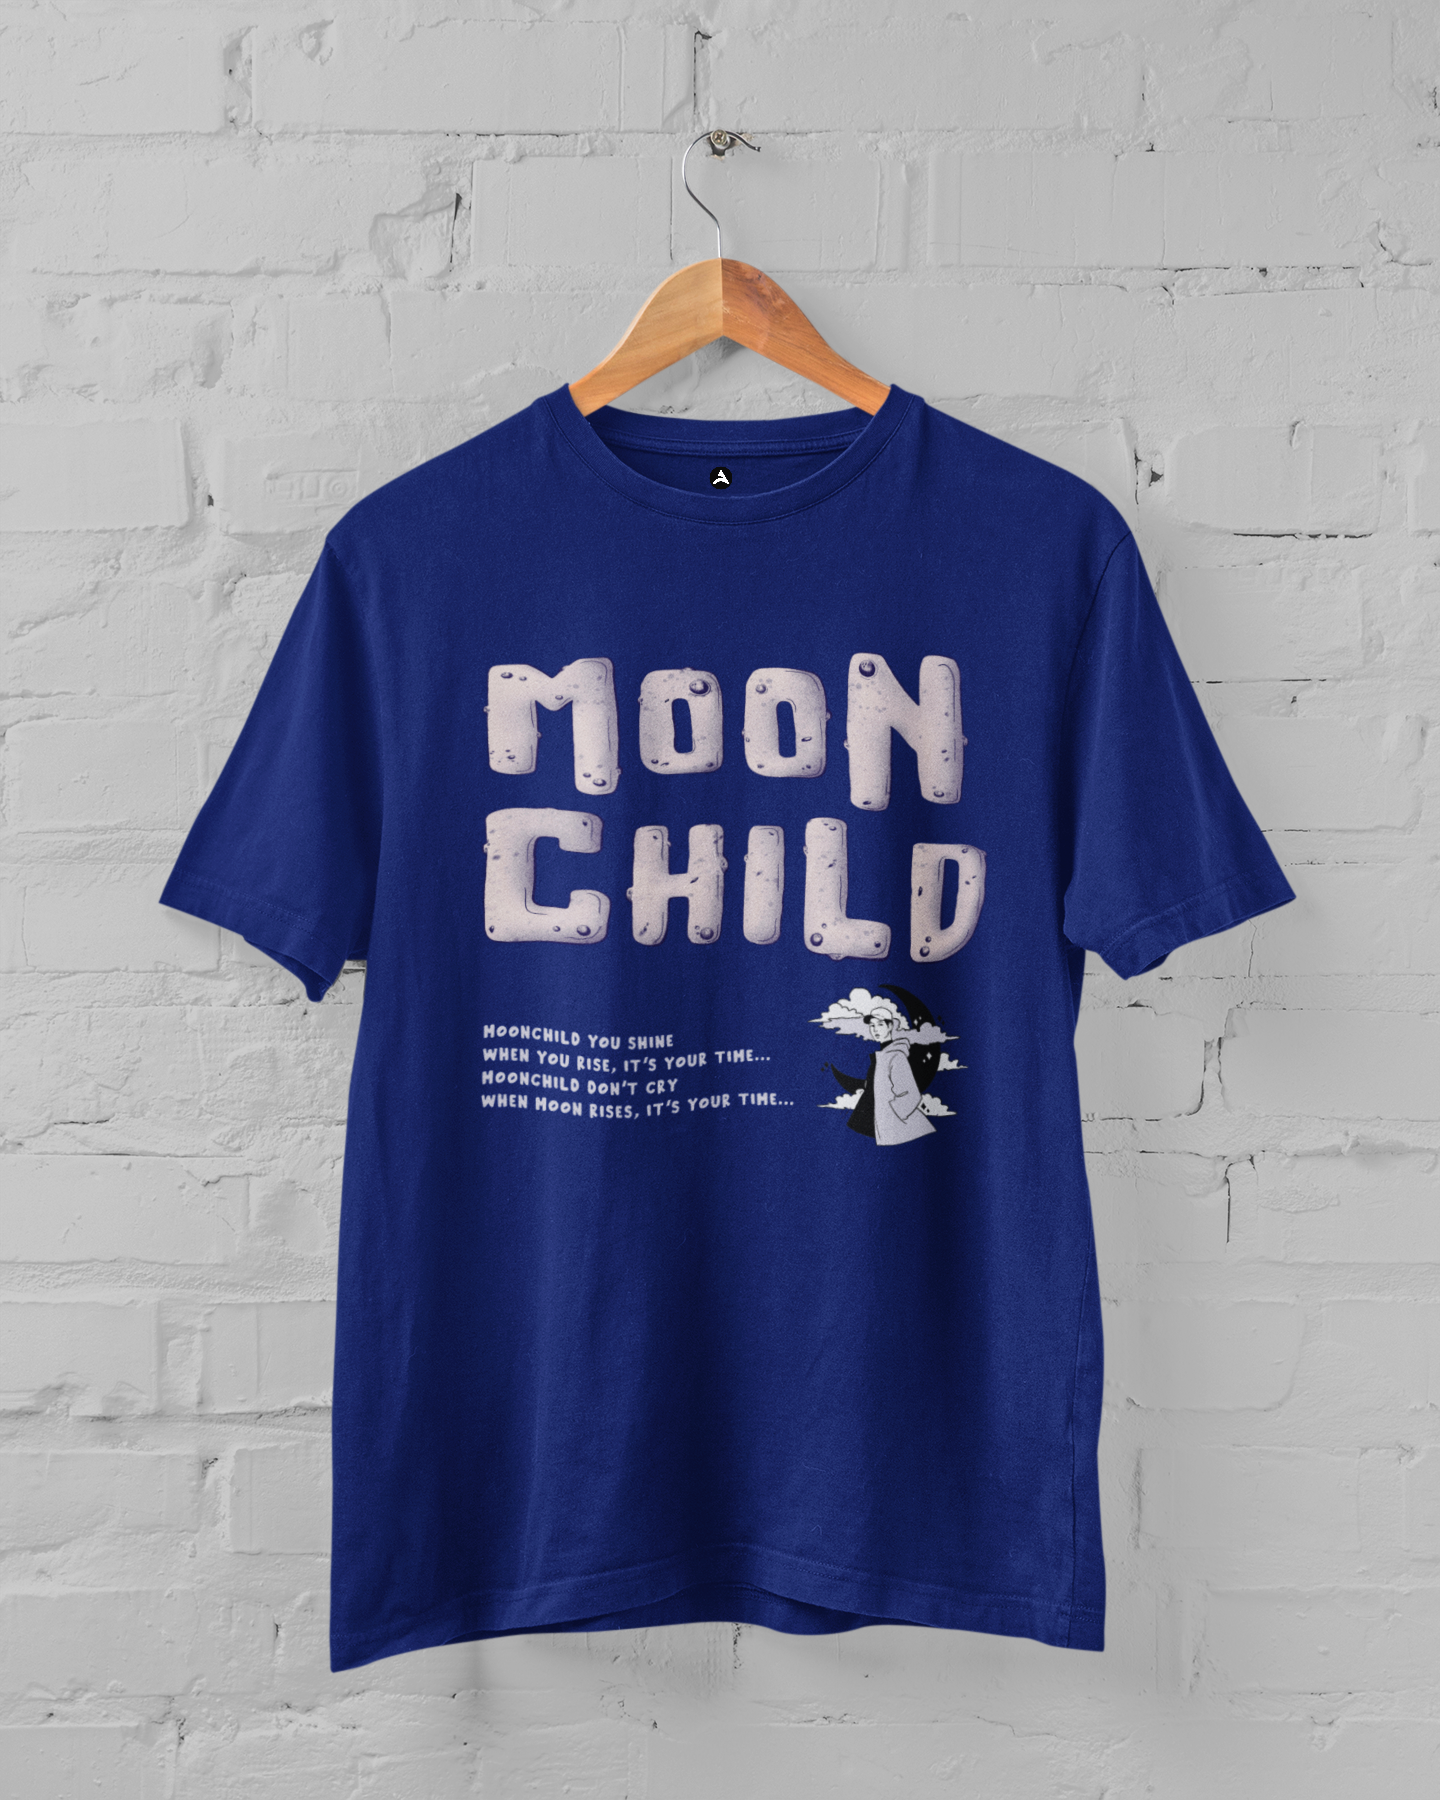 Moonchild: Oversized T-Shirts